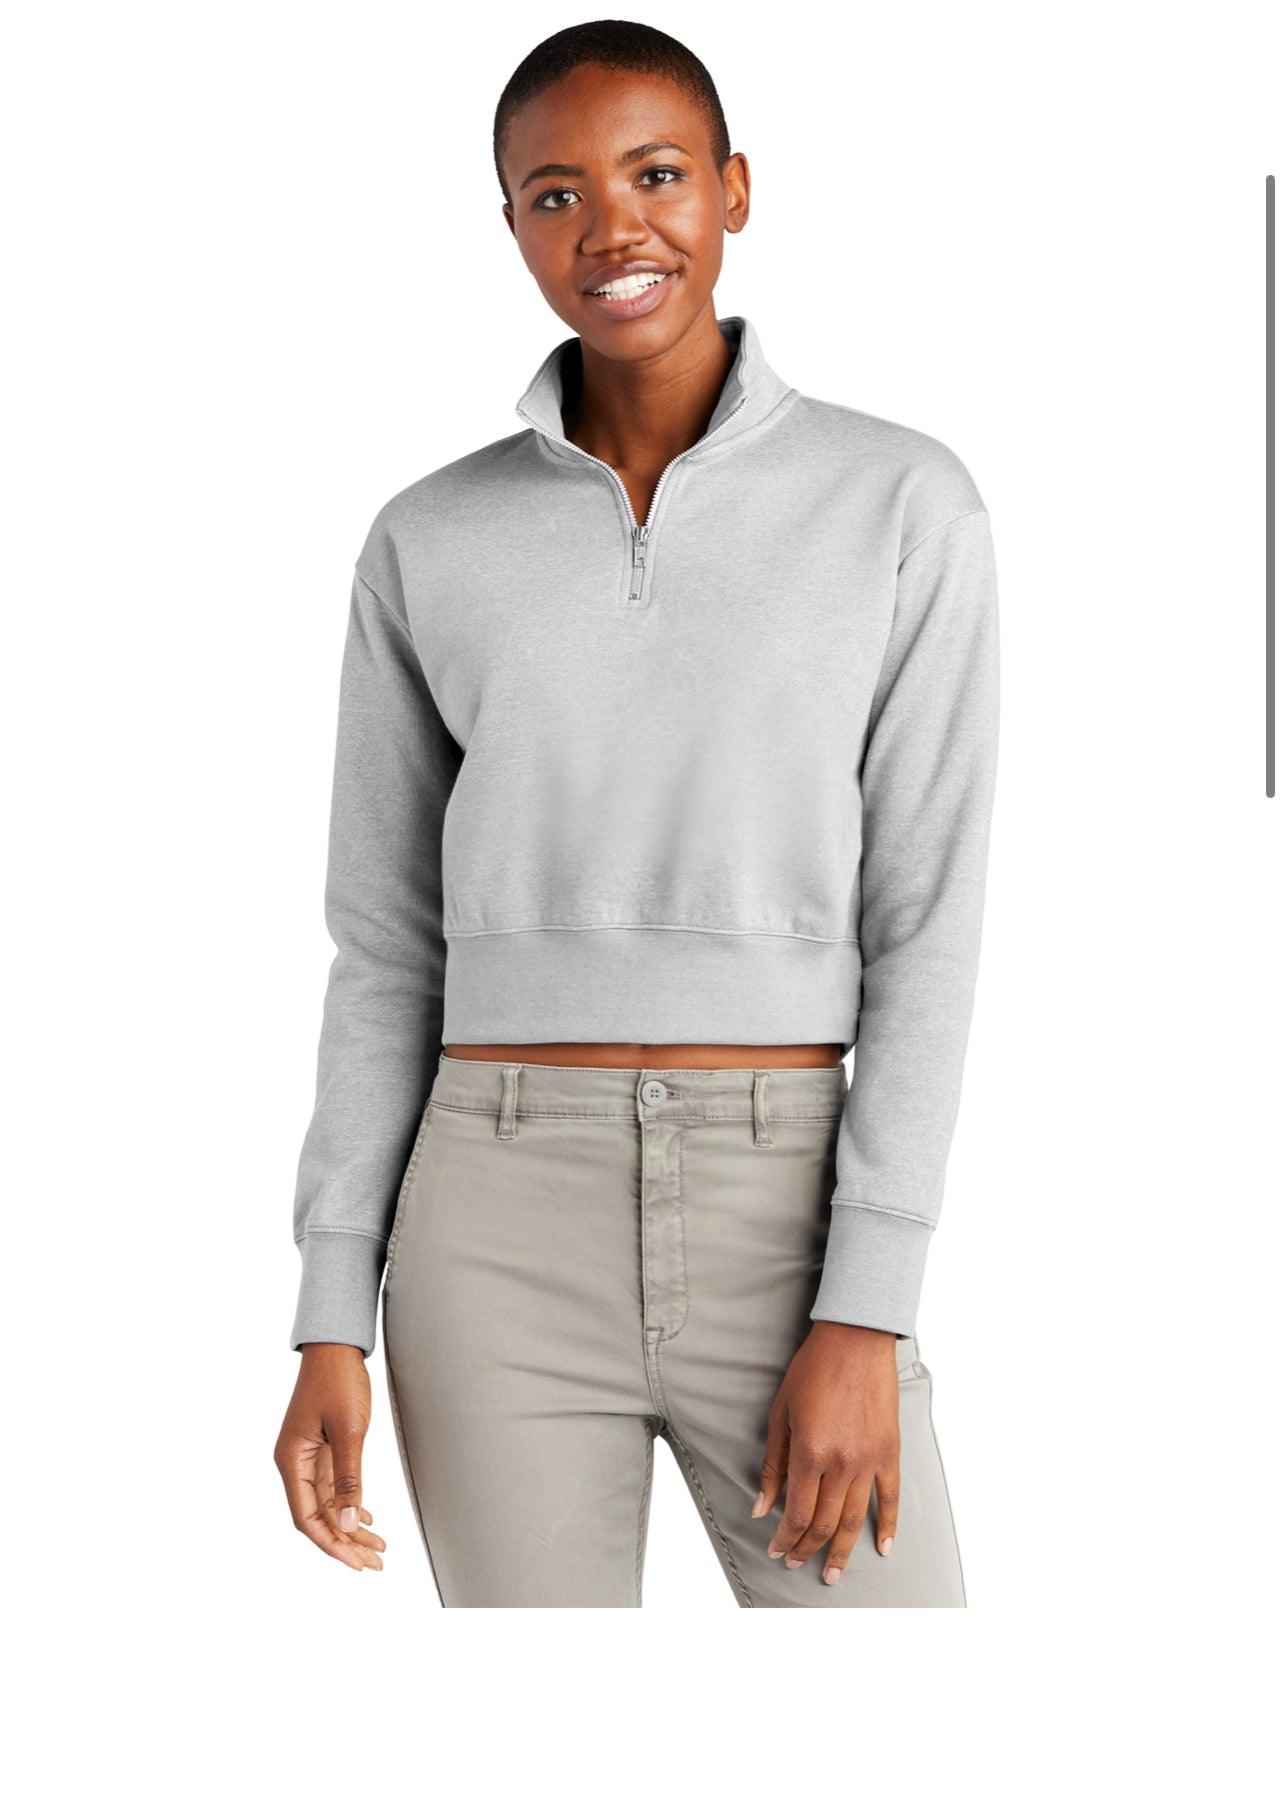 Custom Bling Zip Fleece Sweatshirt